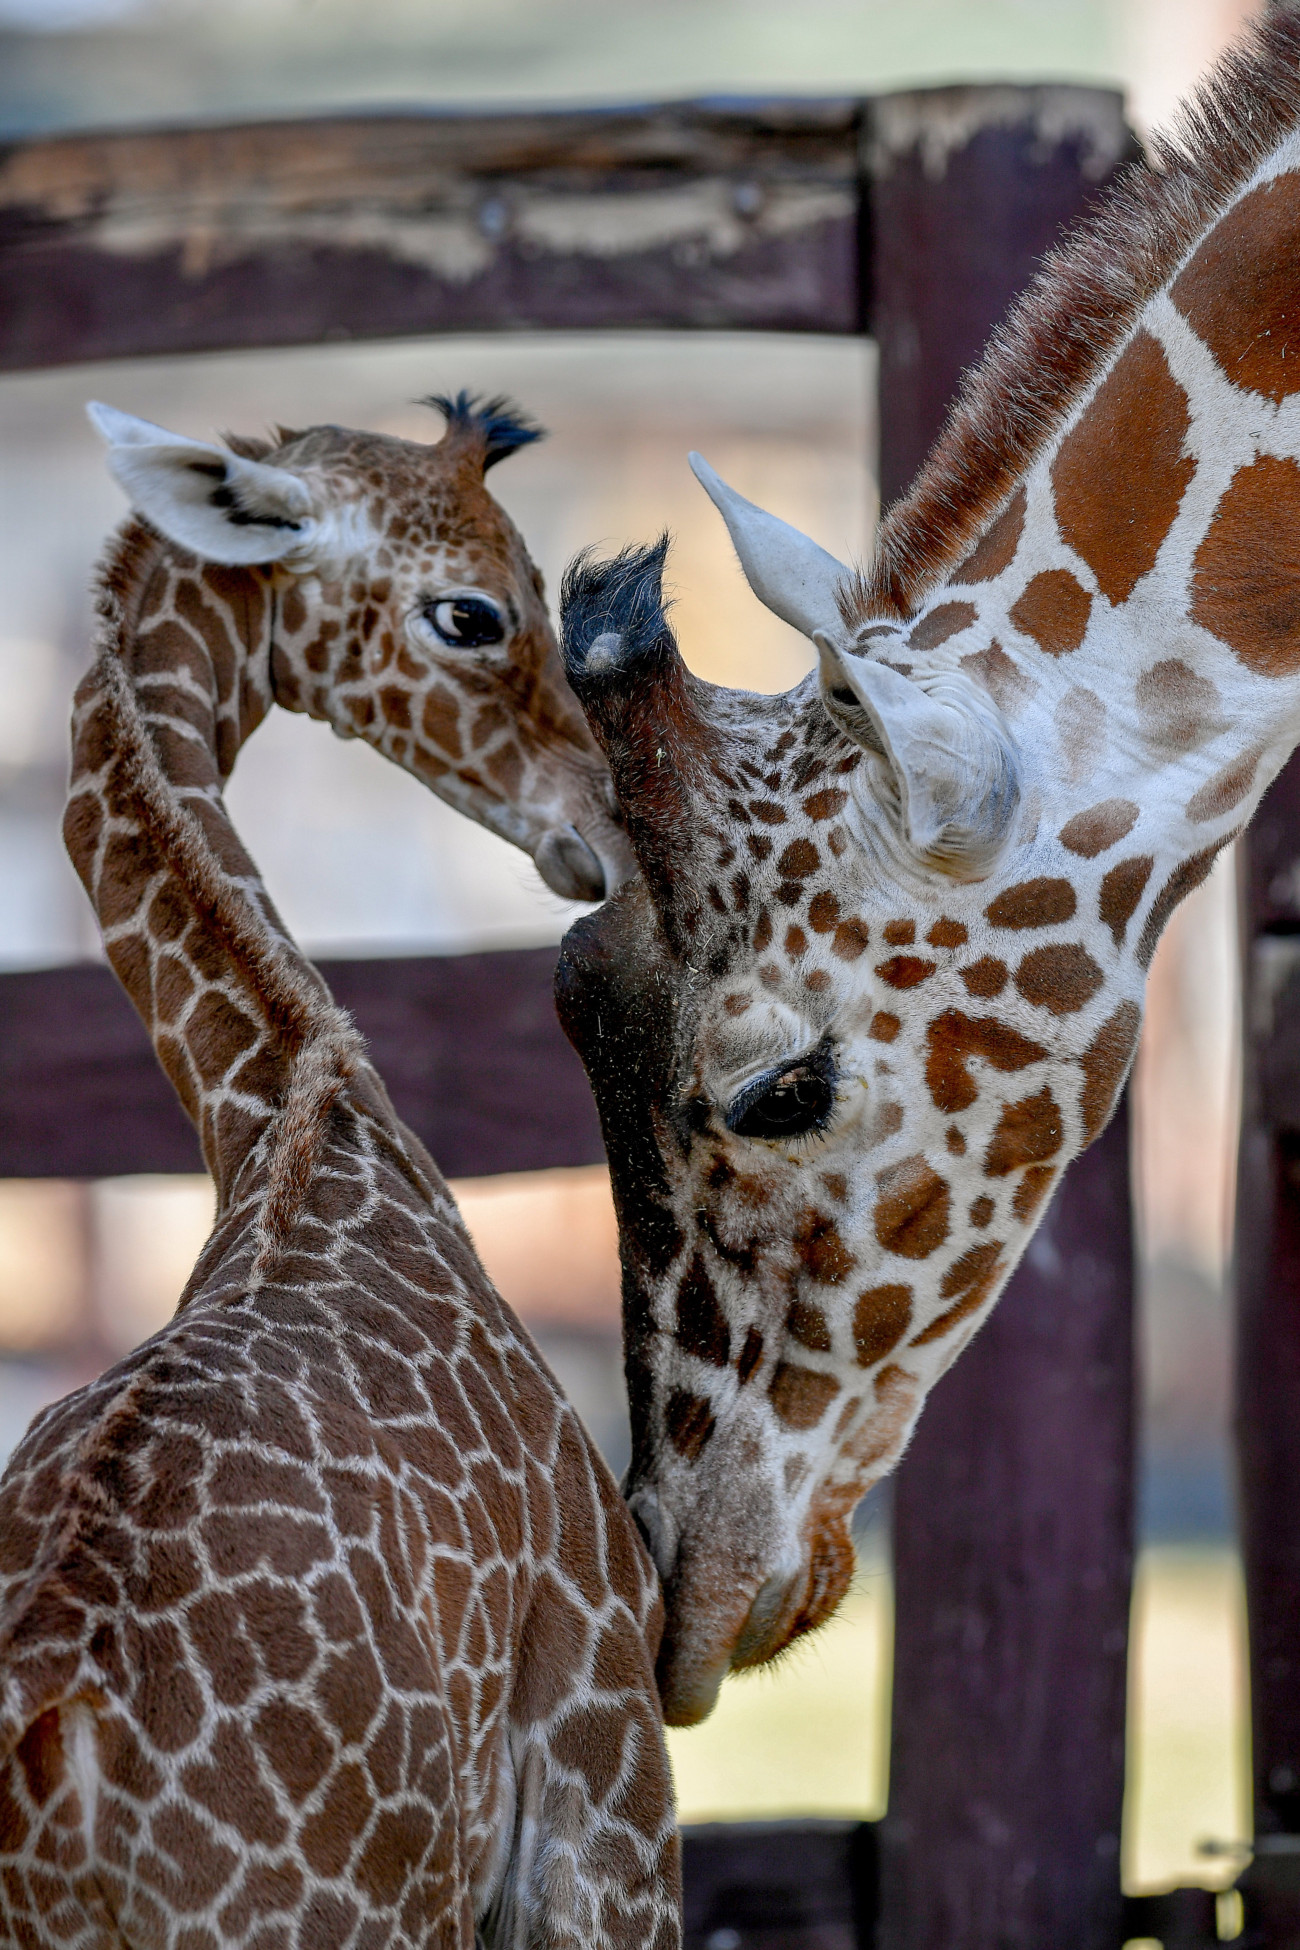 A debreceni állatkert két és félhetes recés zsiráfcsikója (Giraffa camelopardalis reticulata) anyja, Emma mellett.
MTI/Czeglédi Zsolt